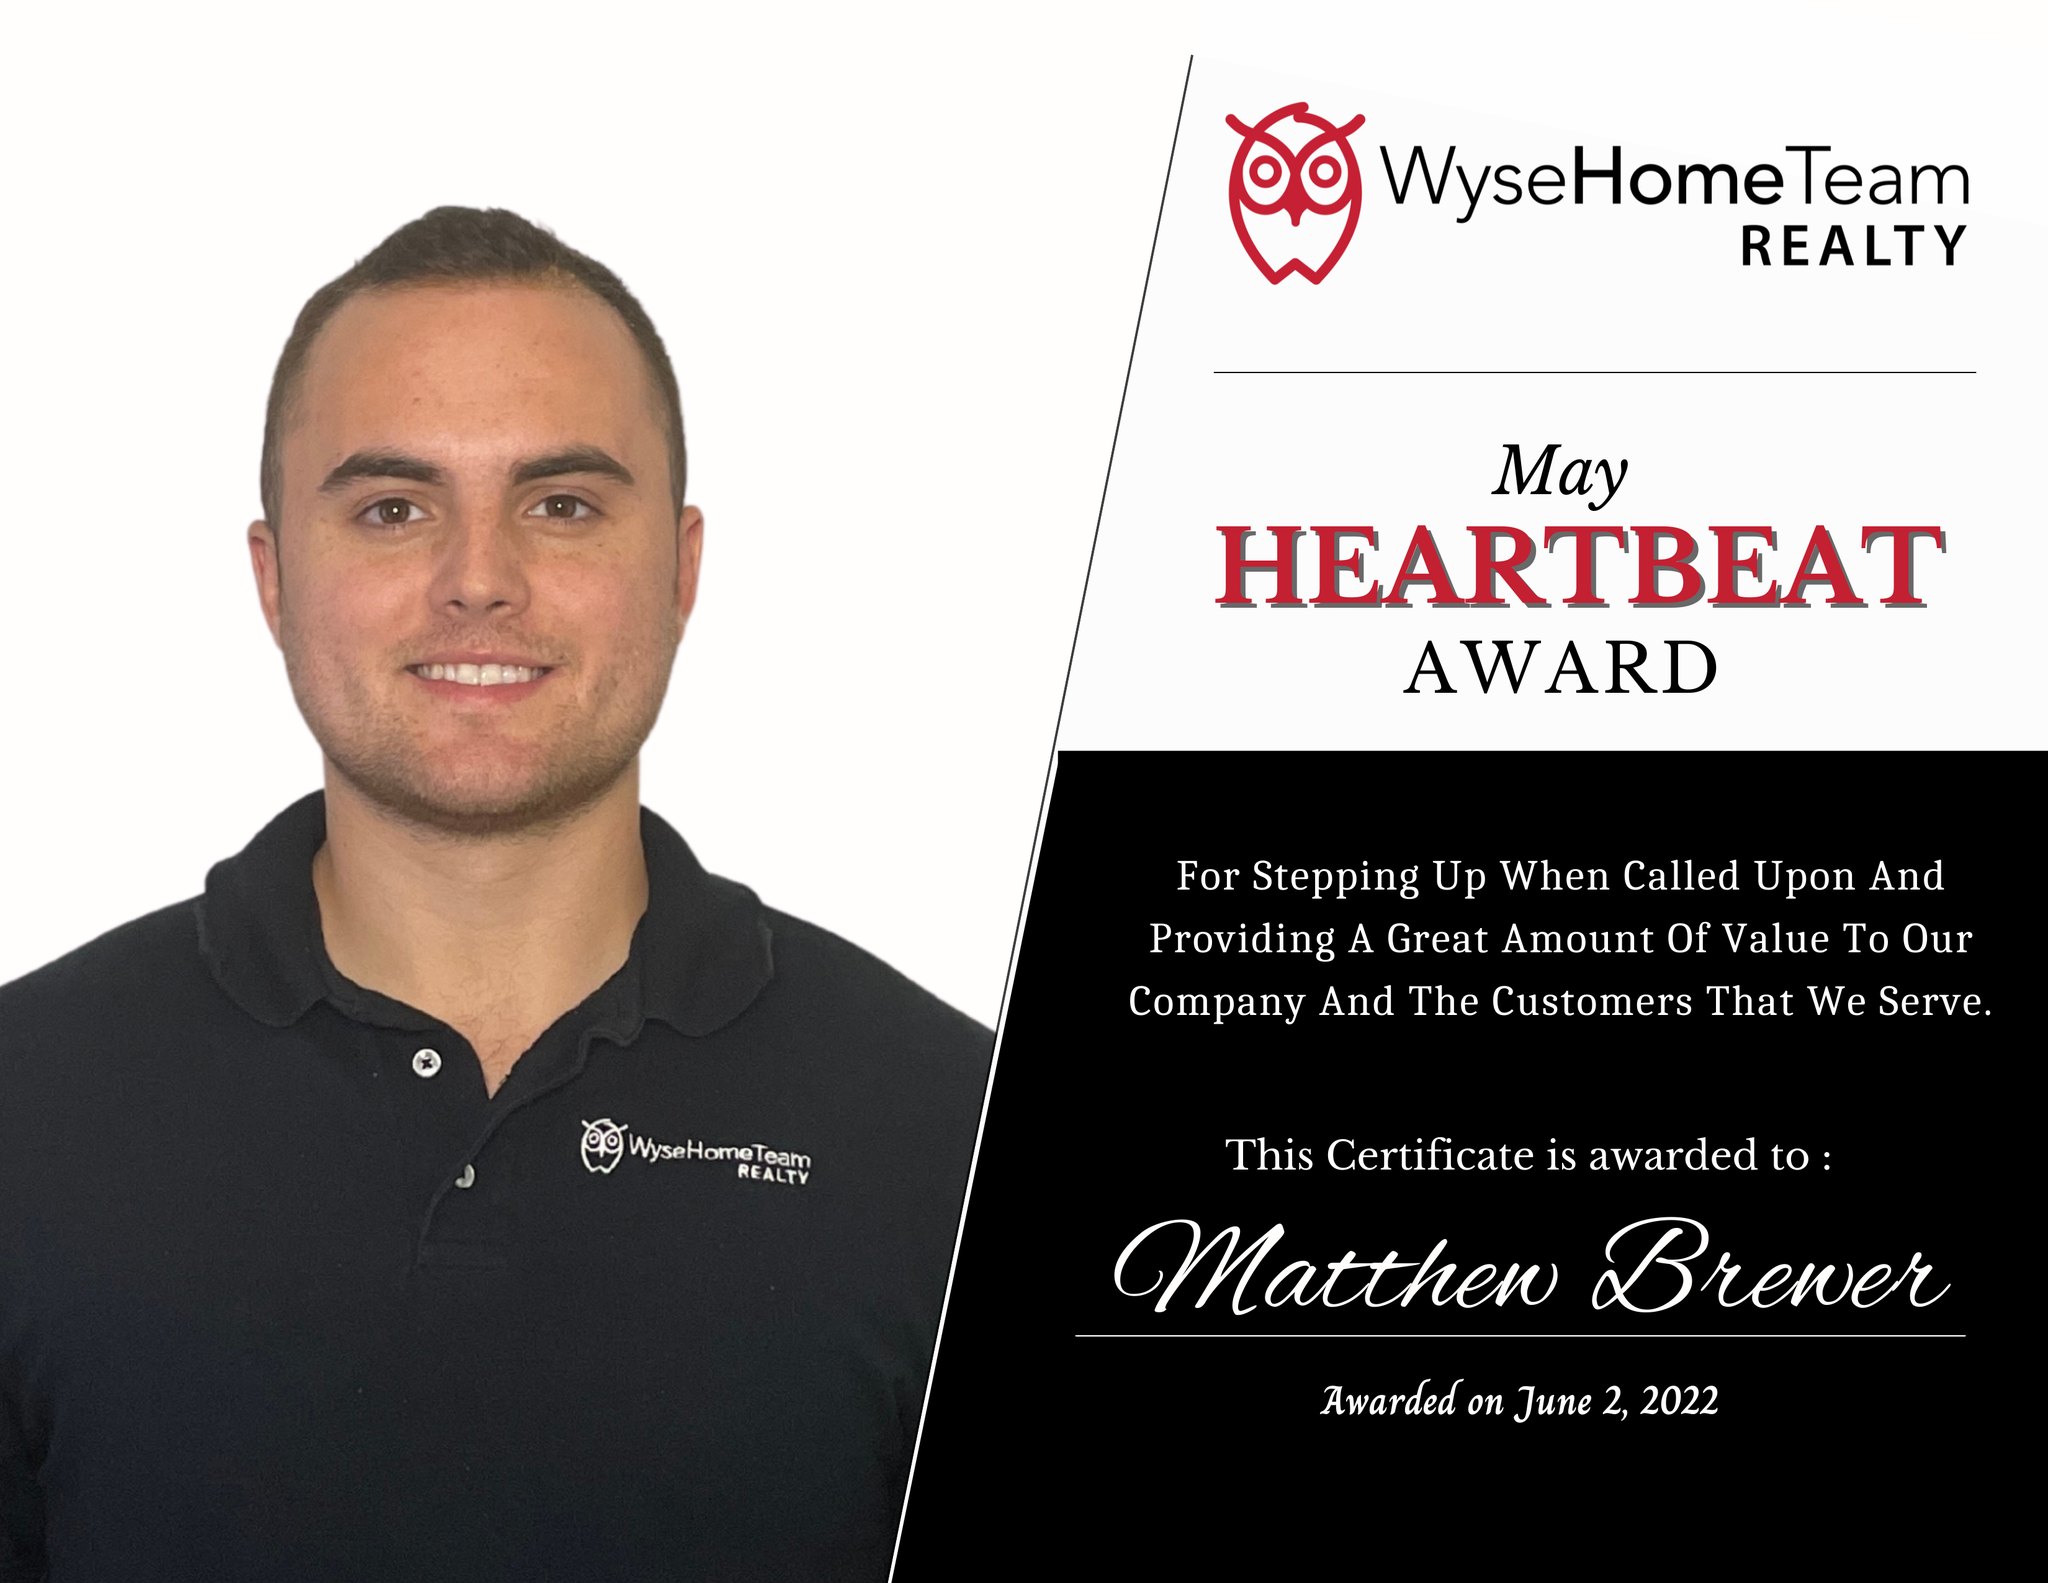 Matt Brewer May 2022 Heartbeat Award